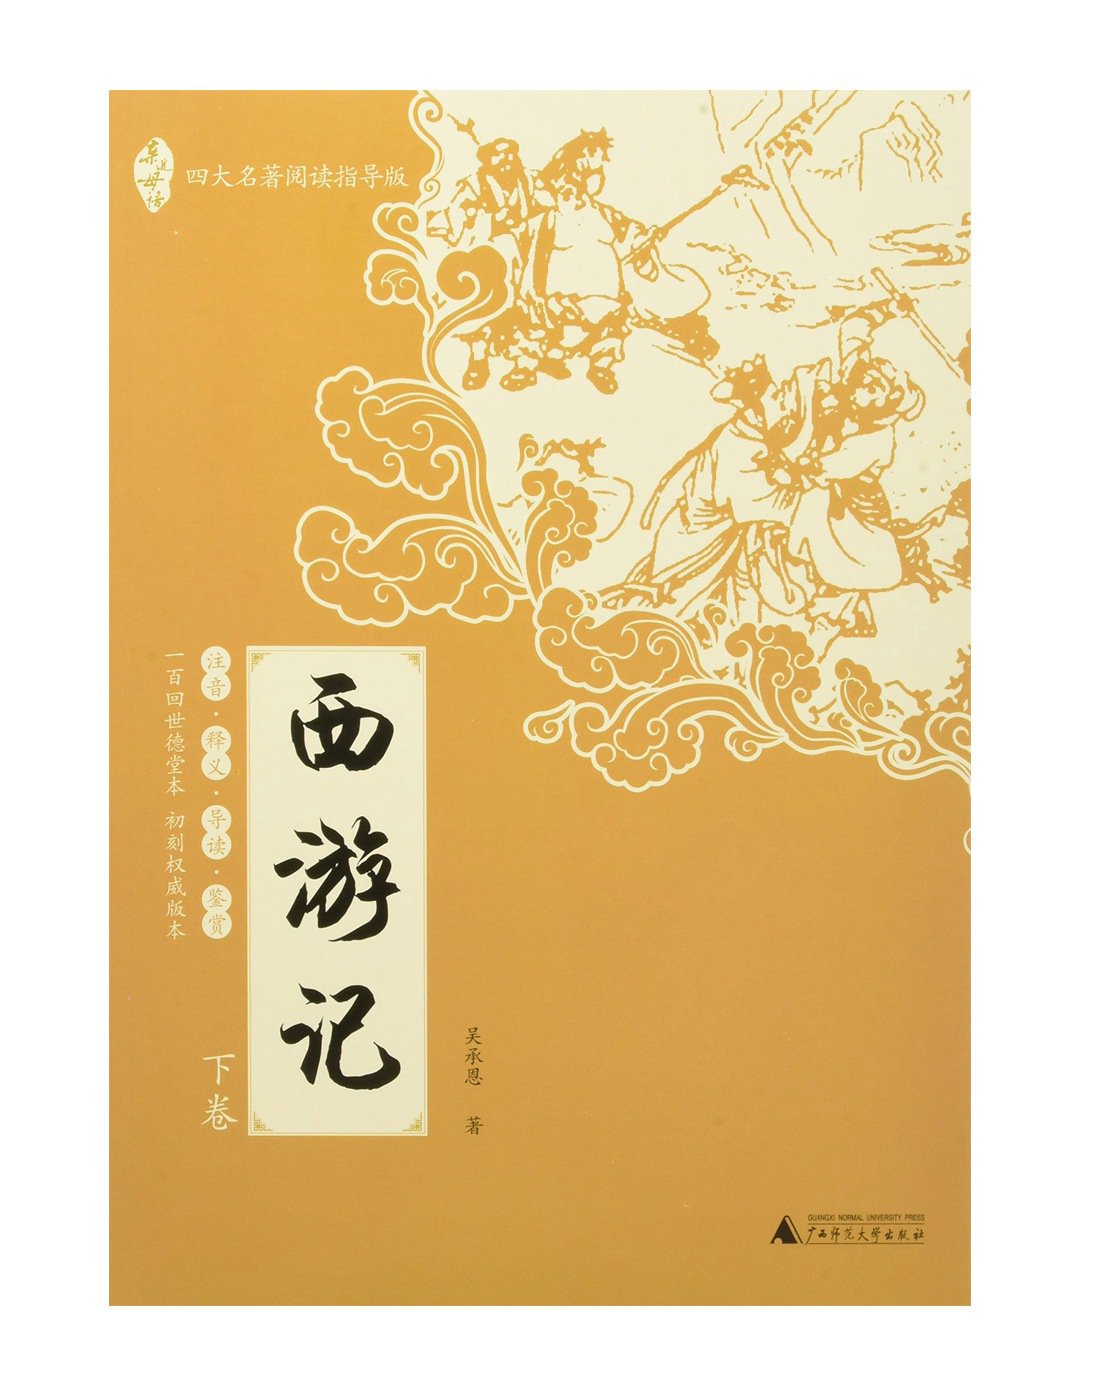 西游记自编书封面设计图片